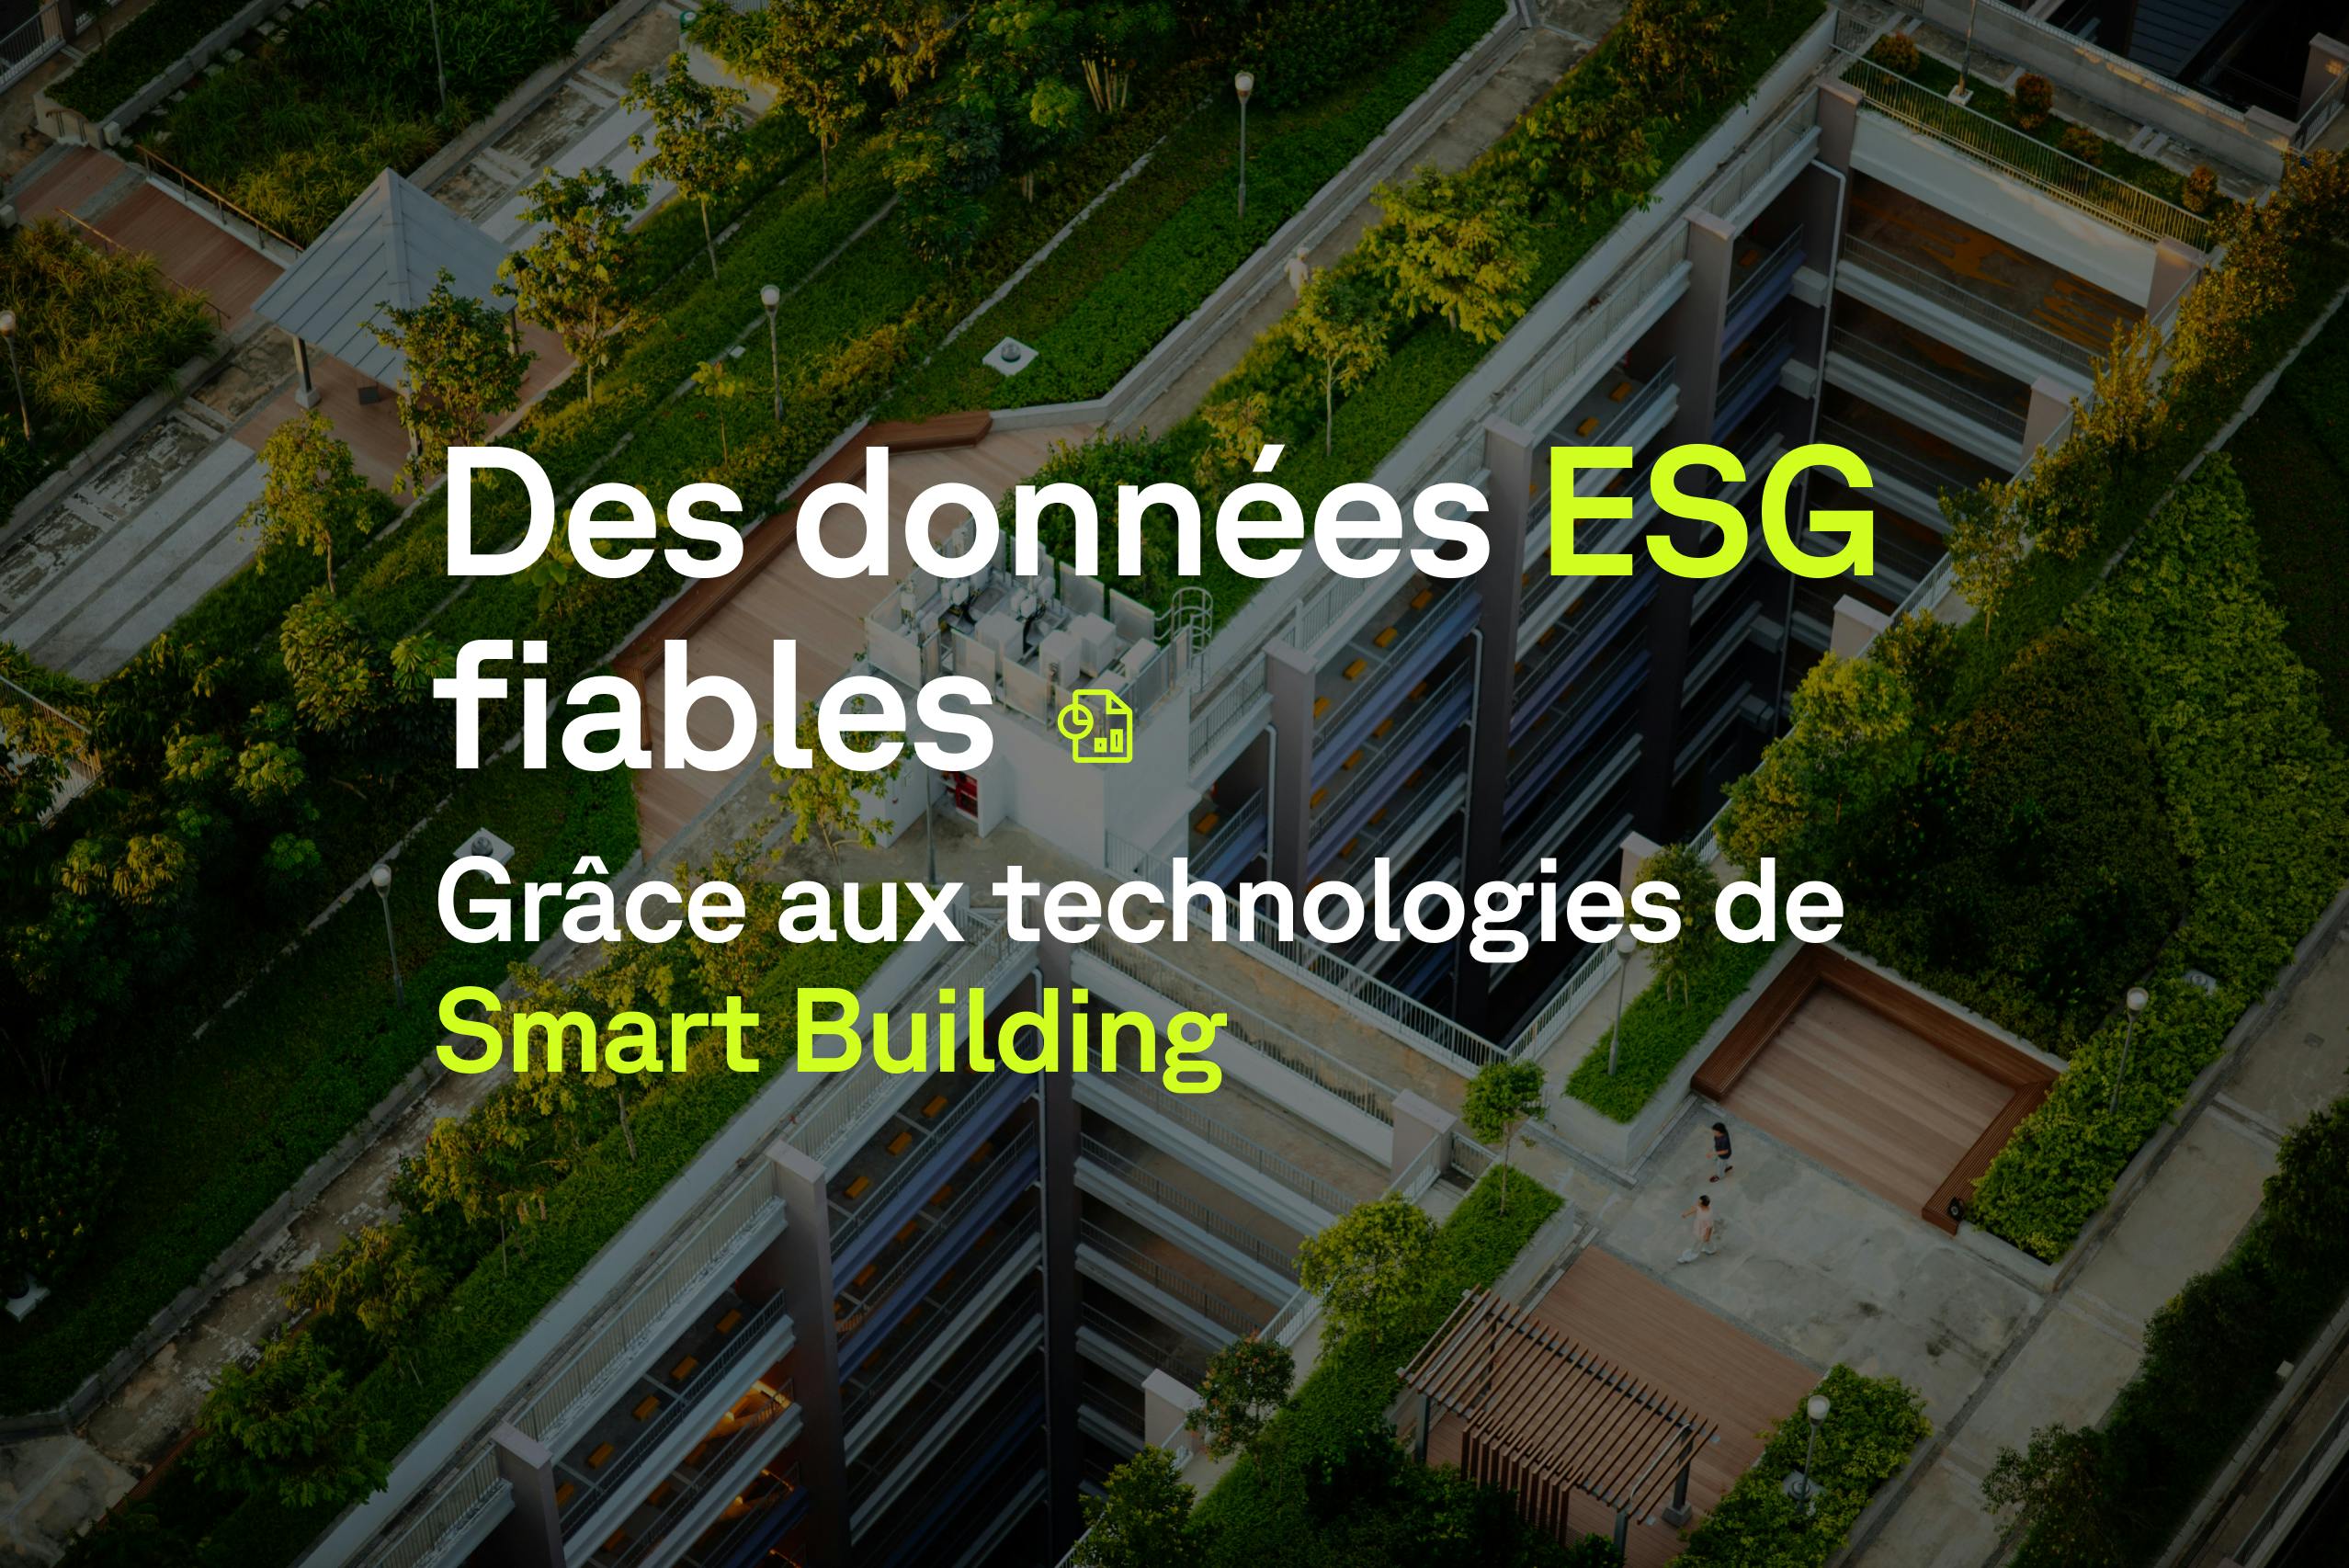 Des données ESG fiables et harmonisées pour la gestion d’actifs immobiliers grâce aux technologies de Smart Building